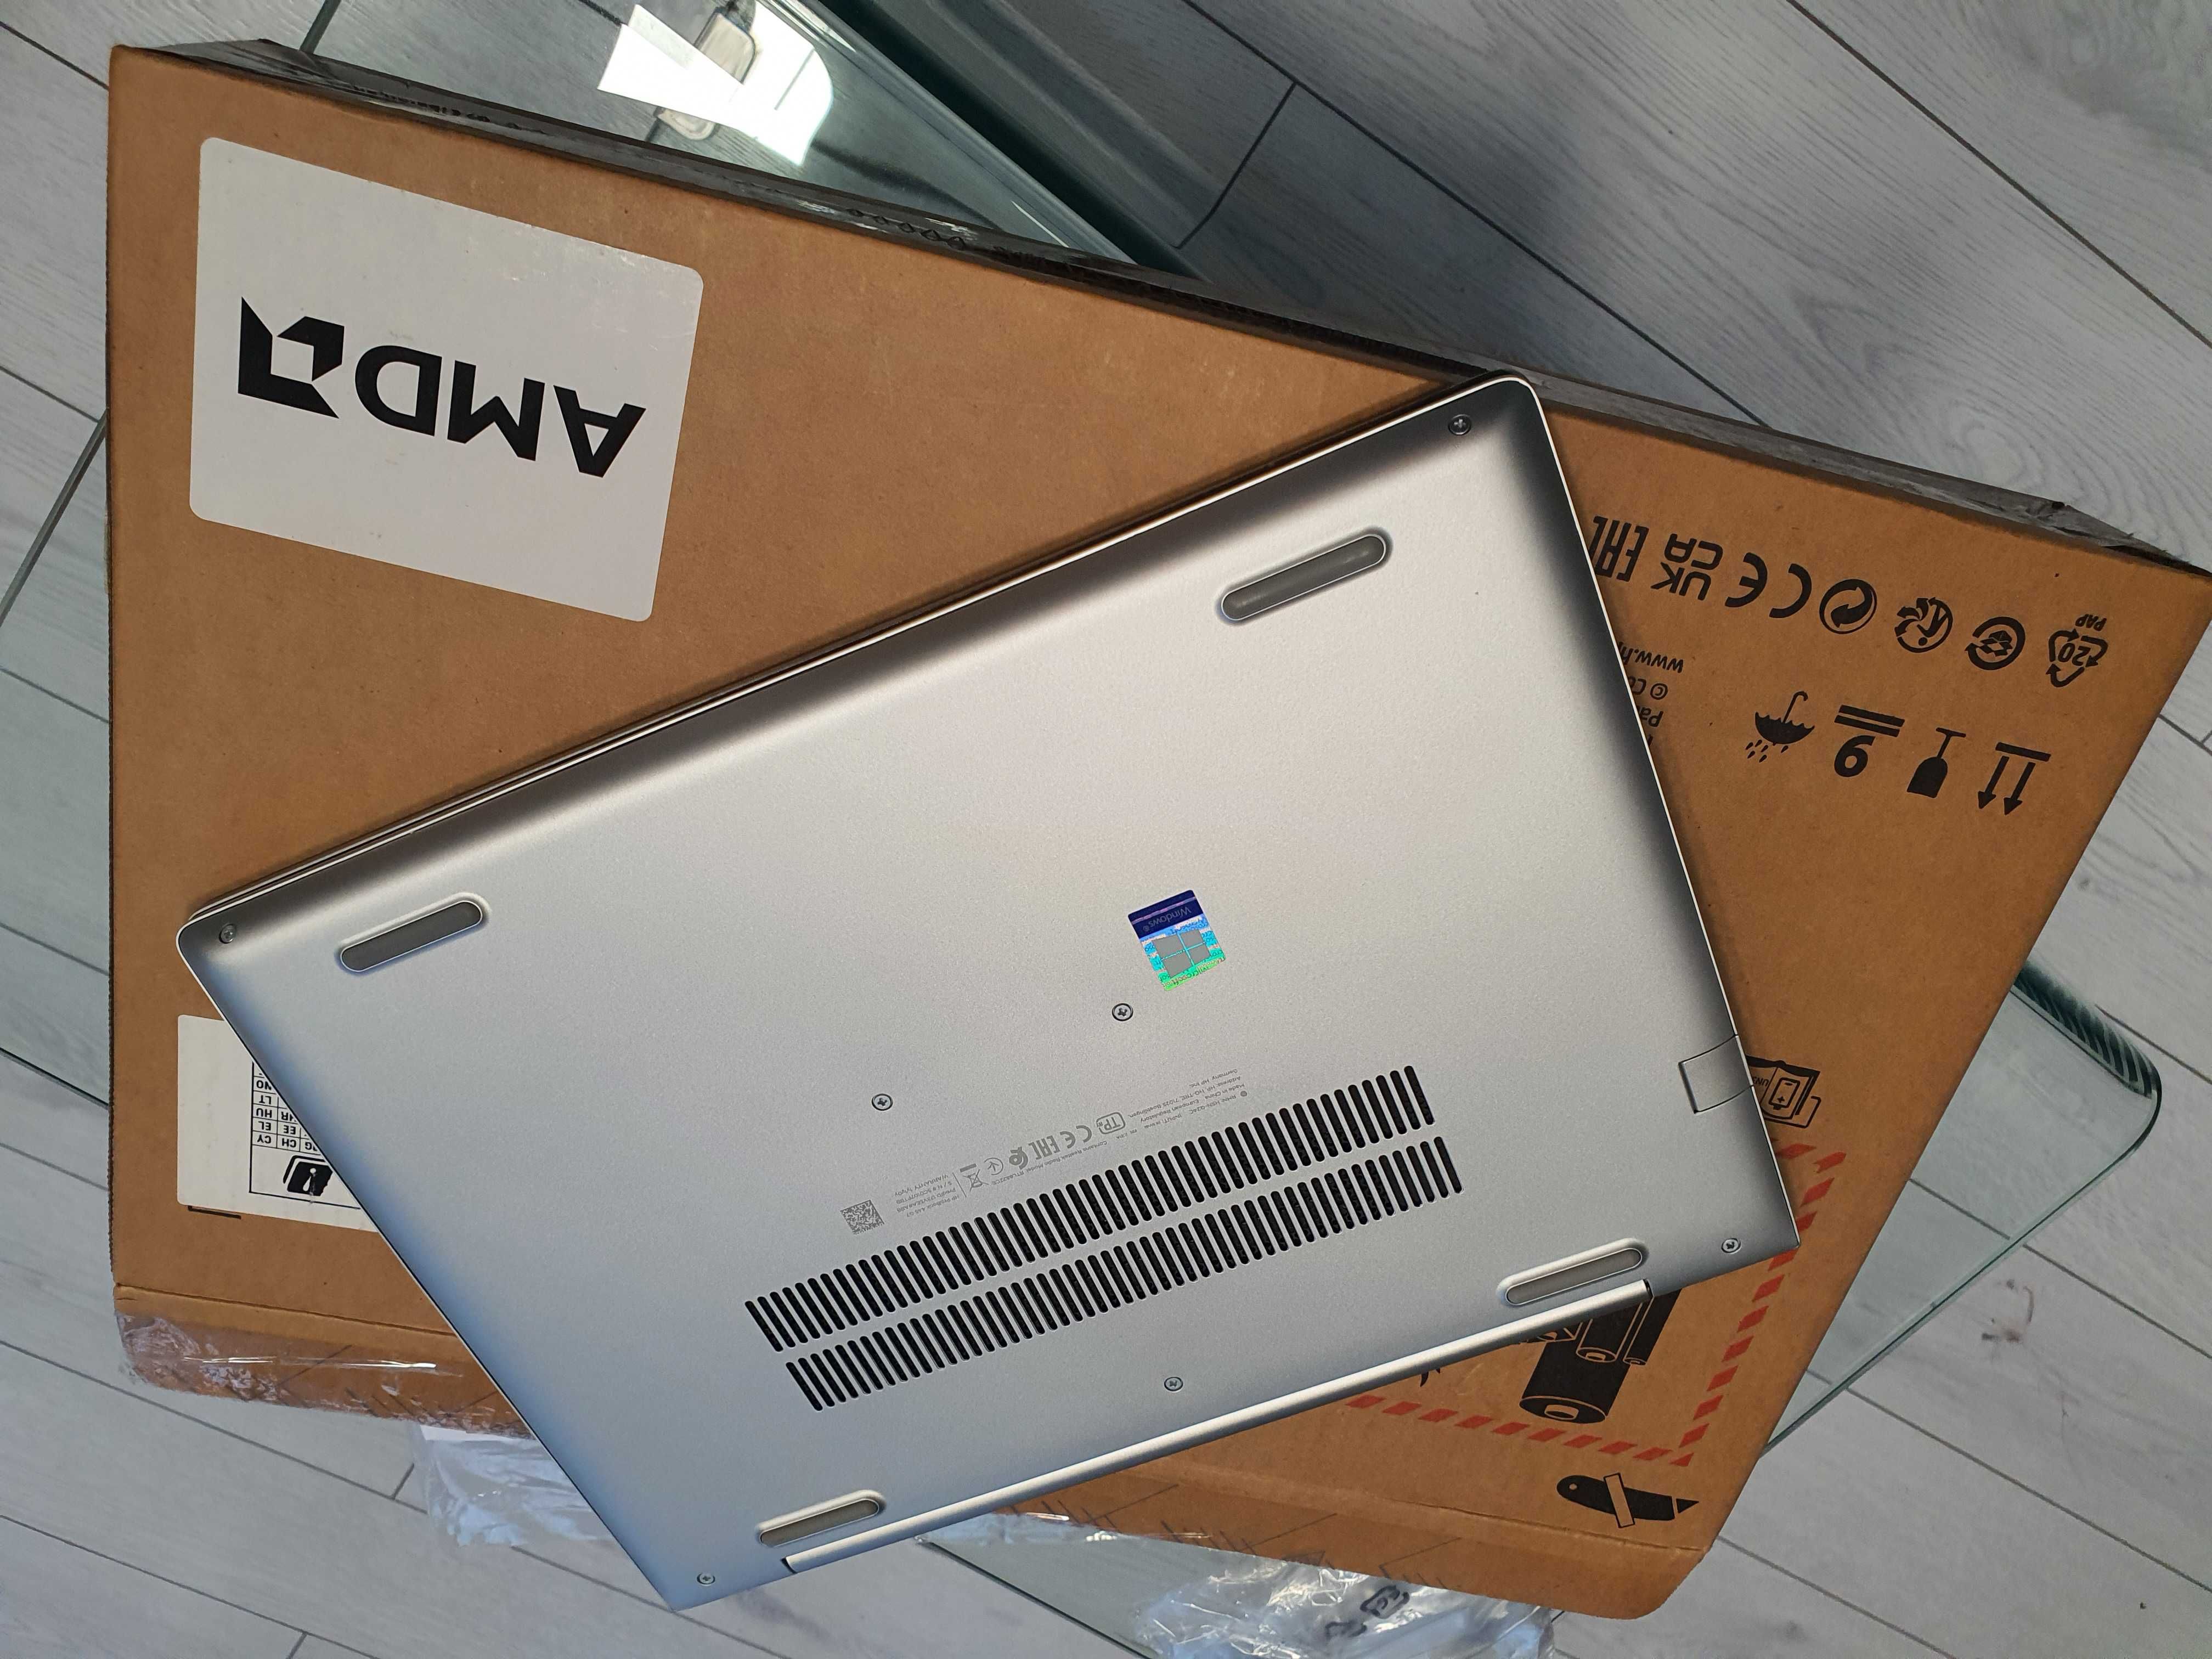 Laptop HP ProBook - AMD Ryzen 5 4500U (~Intel i5-1135G7) - Win 10 Pro